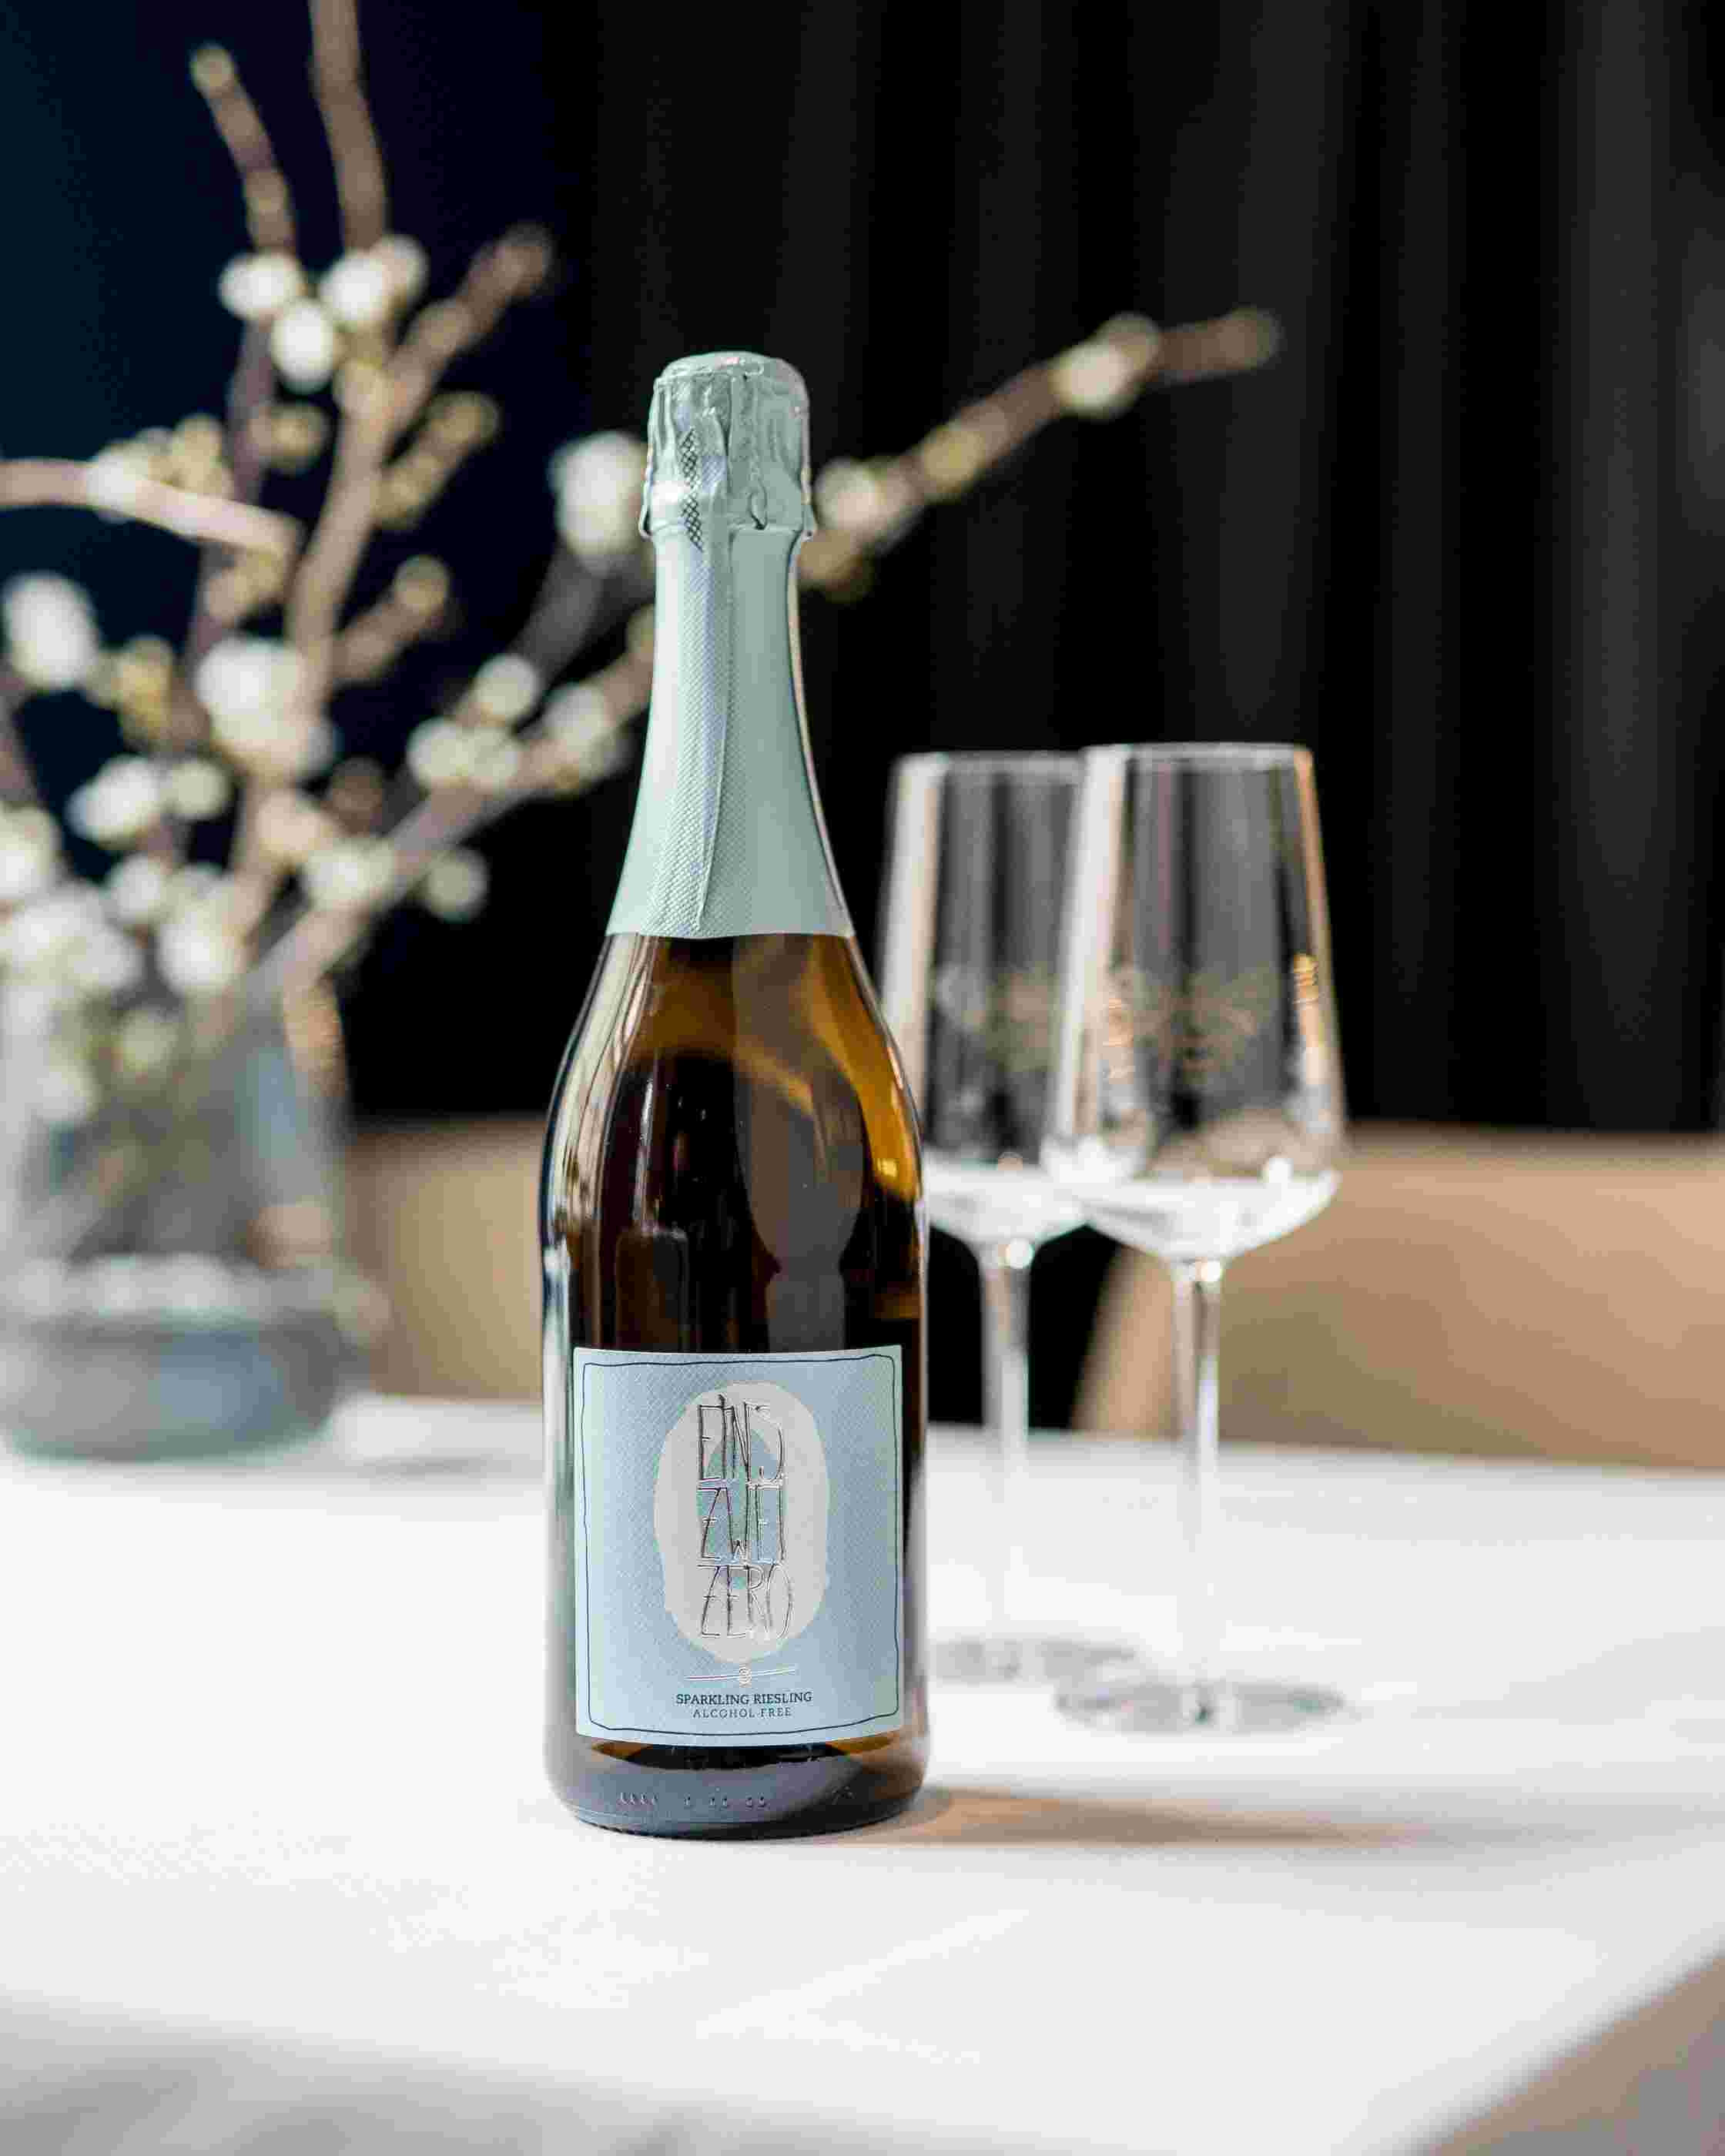 Sfeerfoto van een fles Leitz Eins-Zwei-Zero Riesling Sparkling. Op de achtergrond staan twee lege wijnglazen.